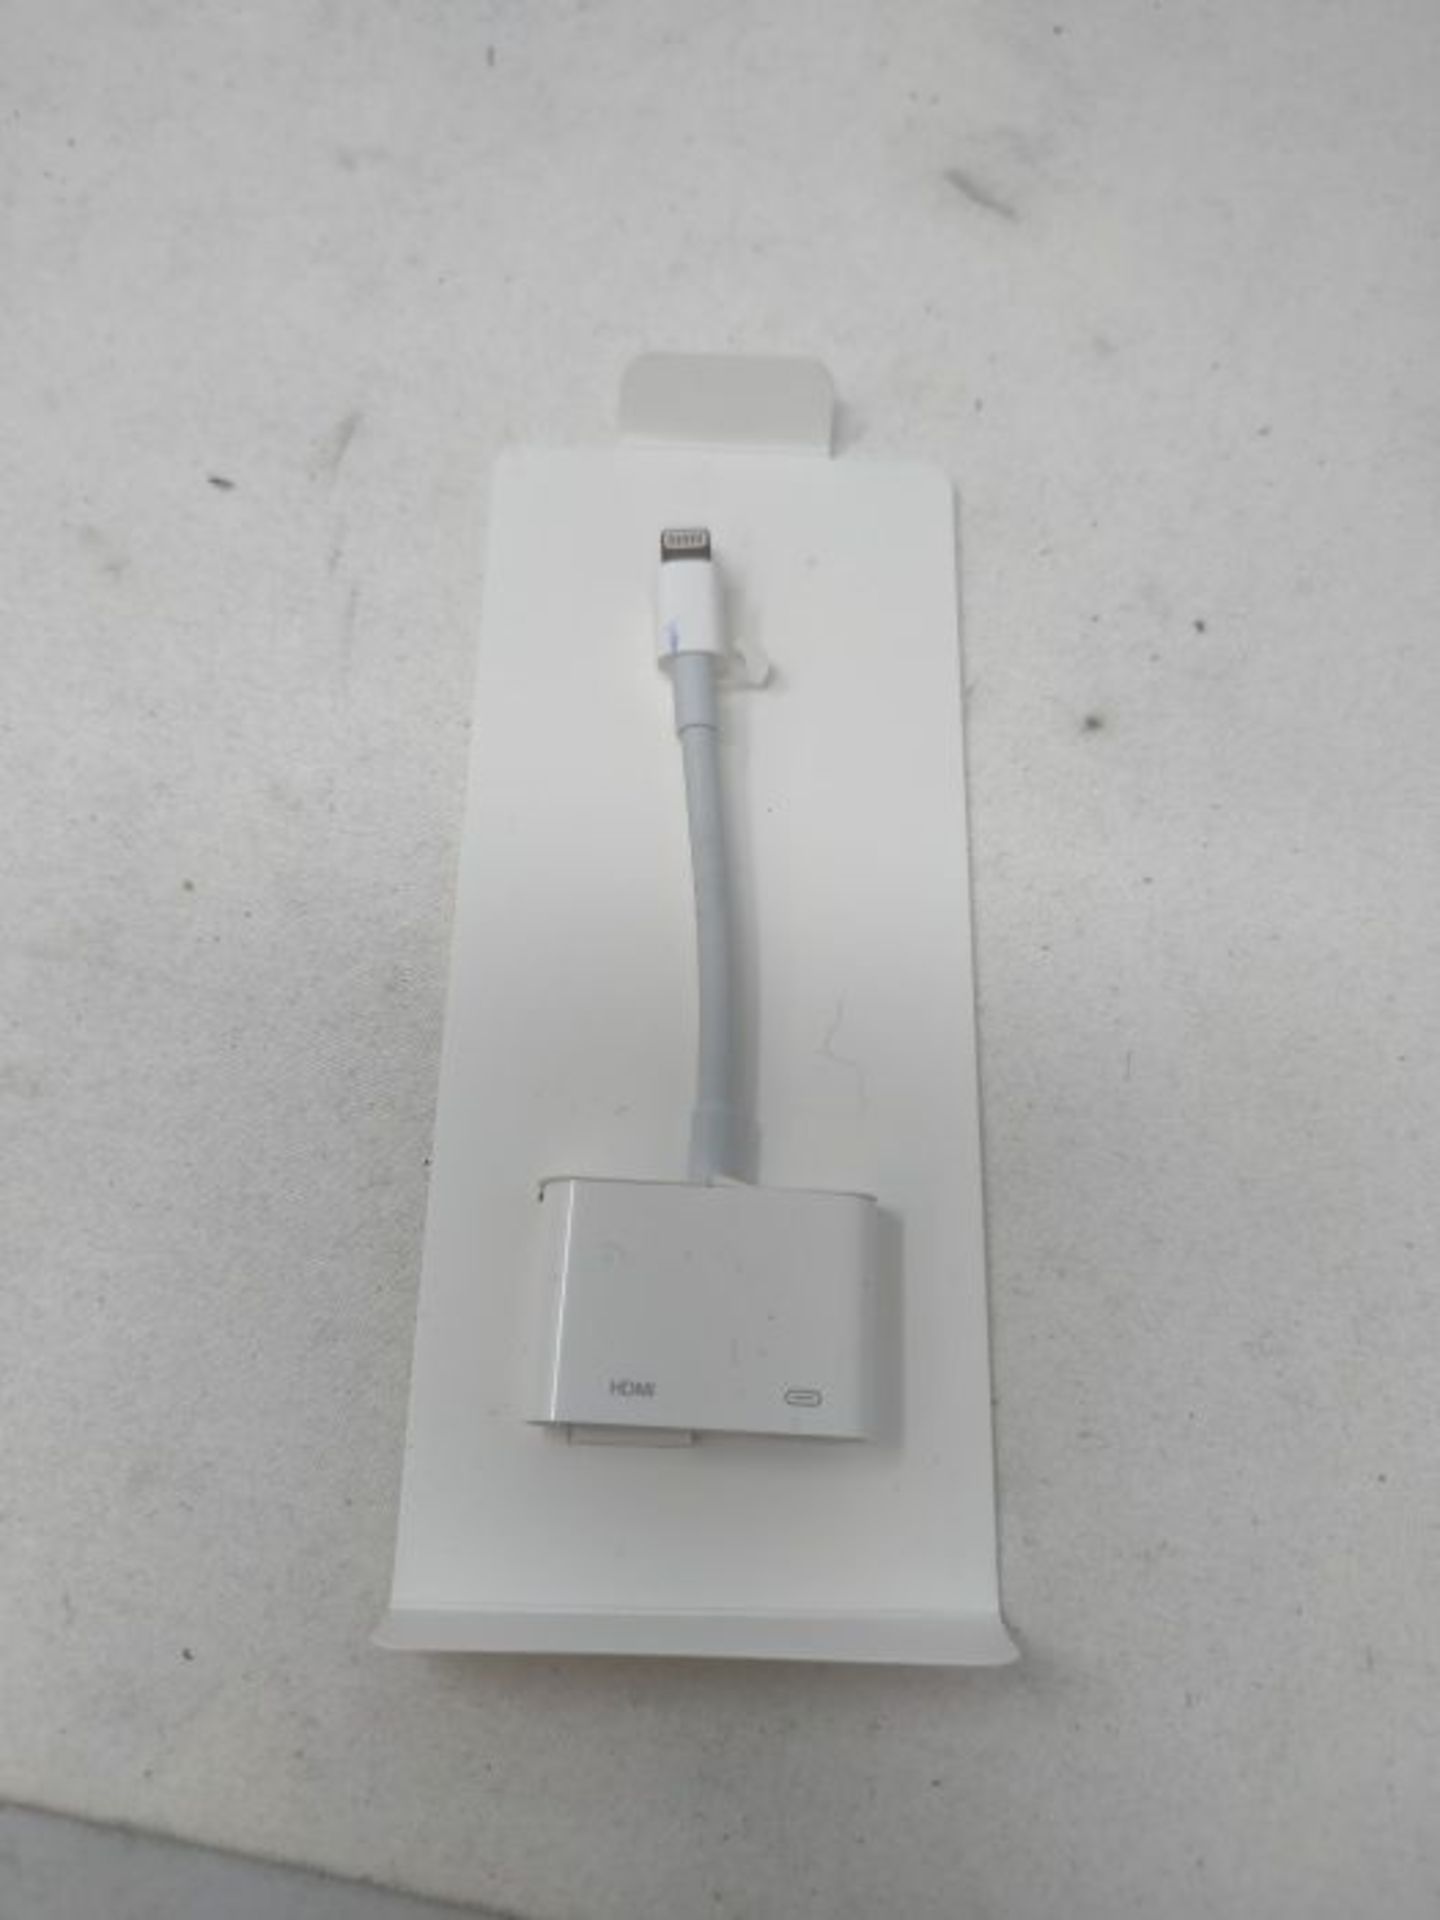 Apple Lightning Digital AV Adapter - Image 3 of 3